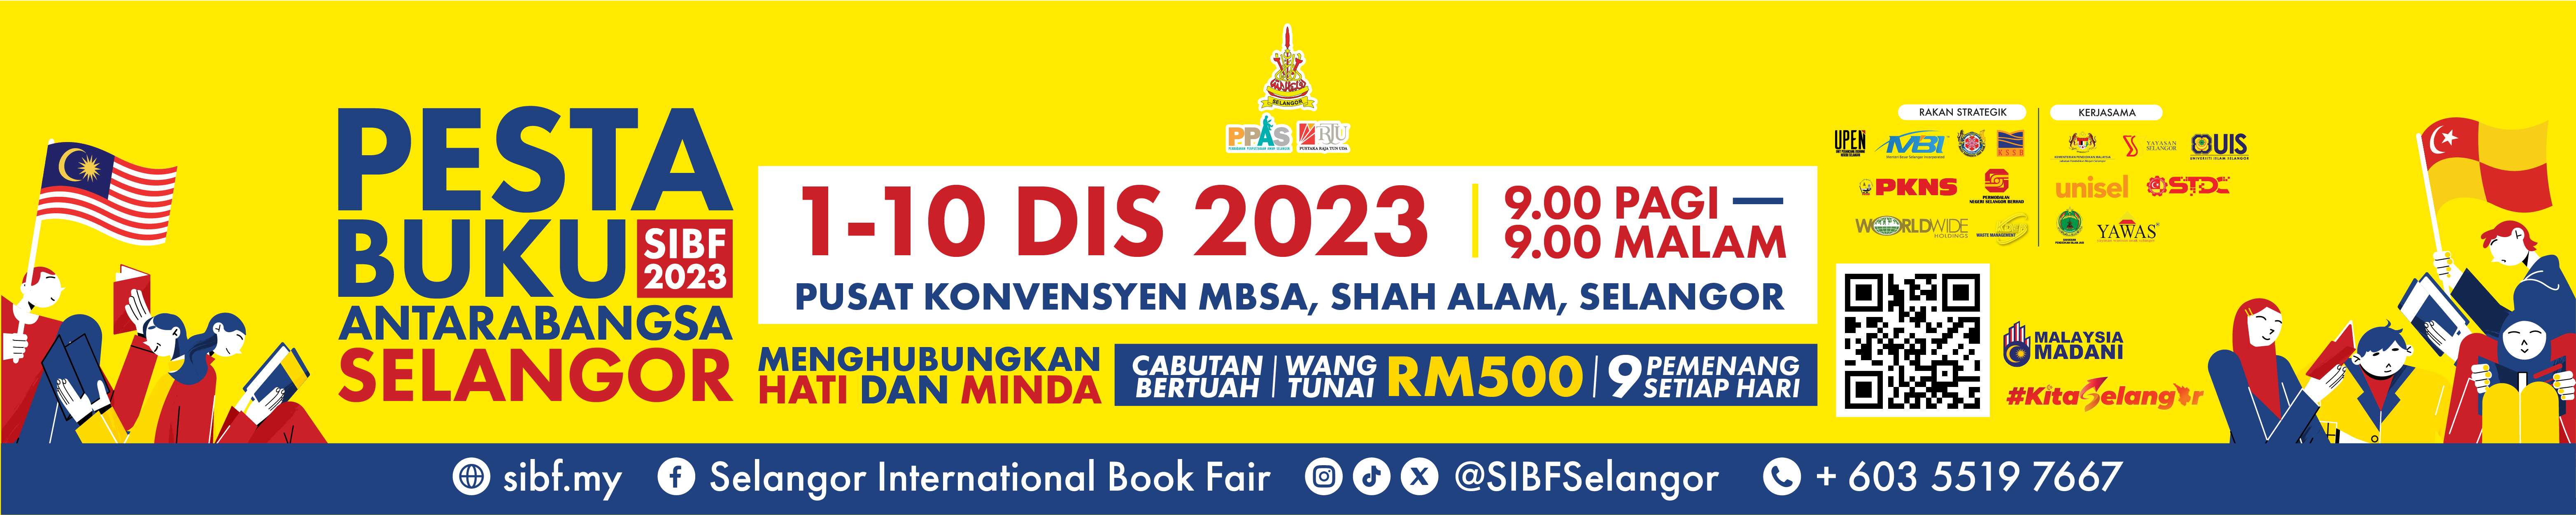 Pesta Buku Selangor 1-10 Disember 2023